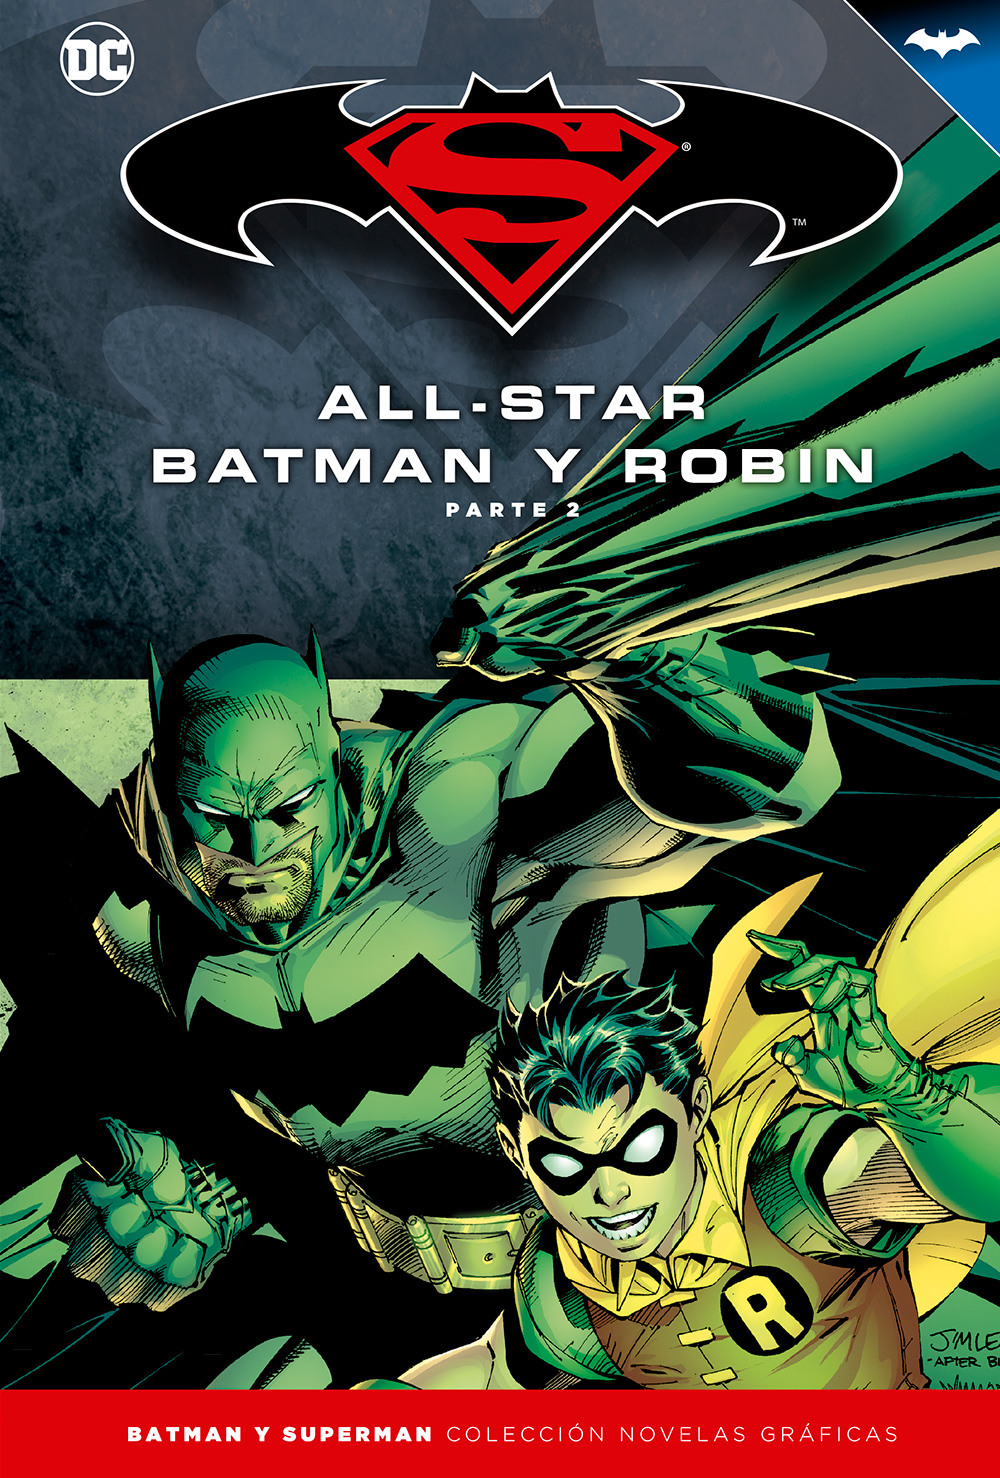 10 - [DC - Salvat] Batman y Superman: Colección Novelas Gráficas - Página 3 Portada_BMSM_3_AllStarBatman2